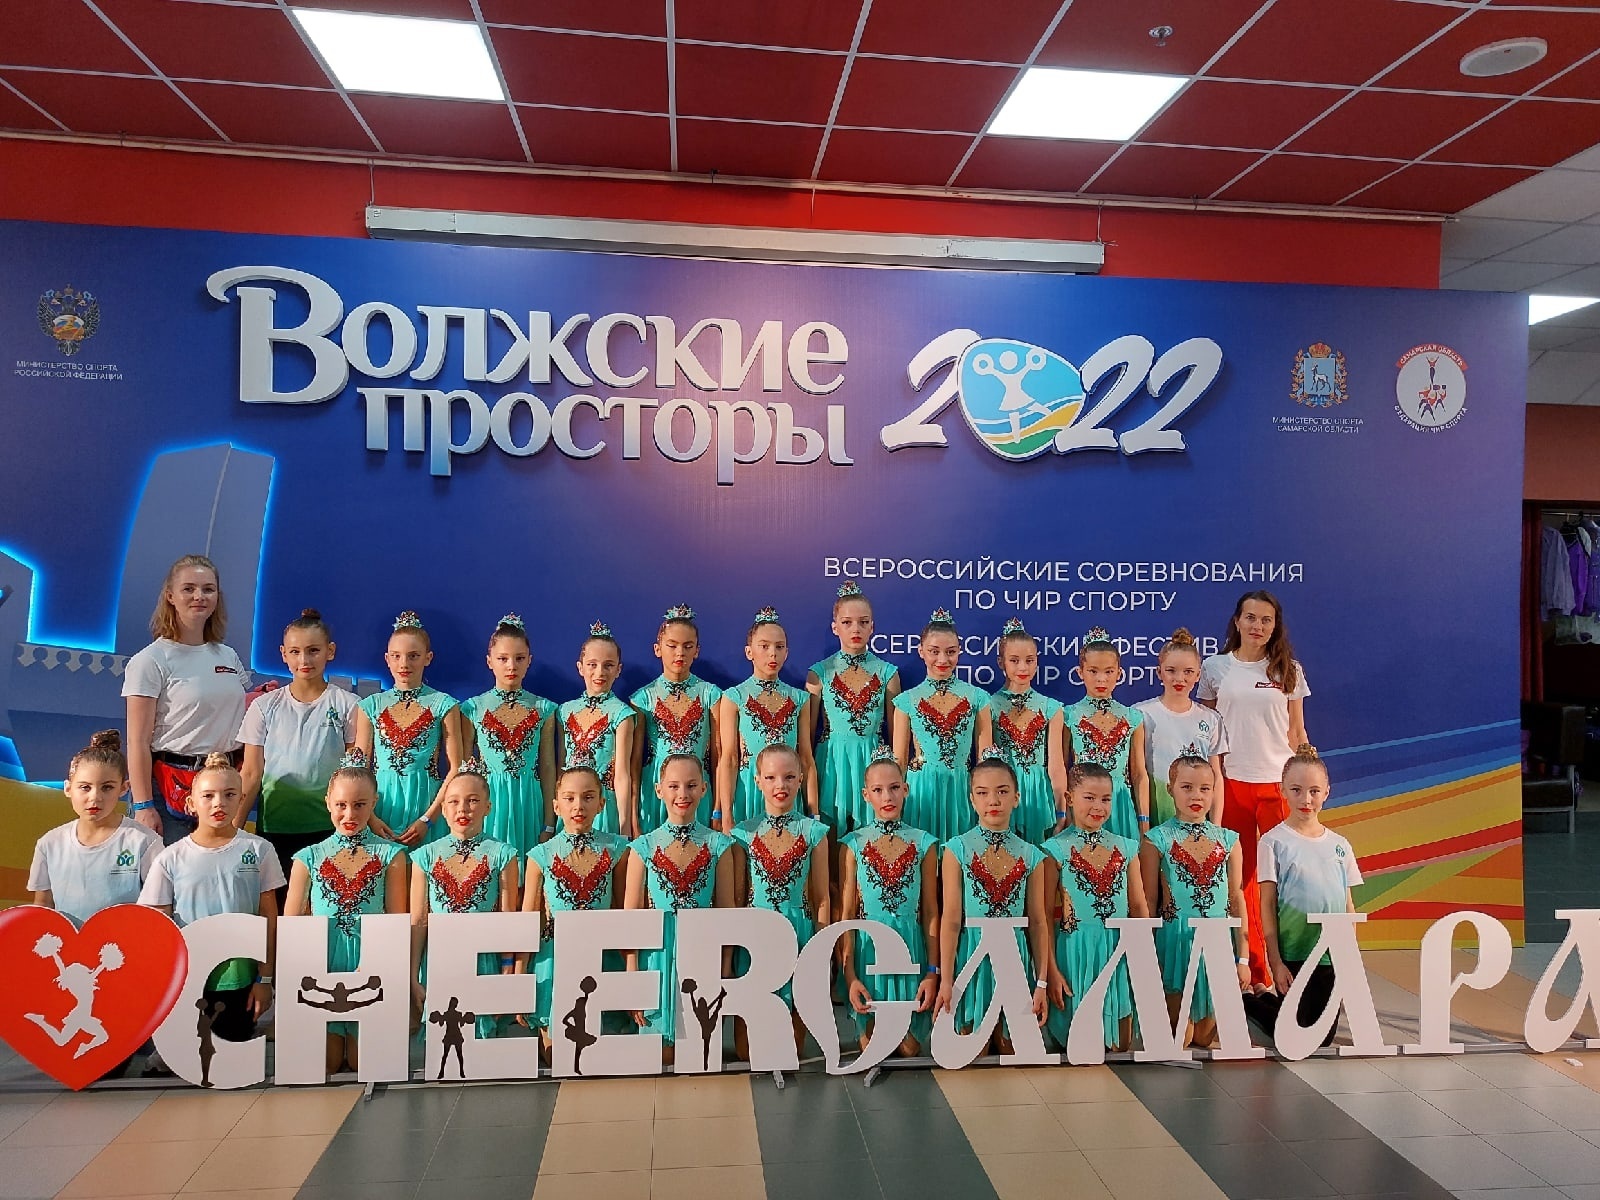 Уральская Школа Спортивного Чирлидинга